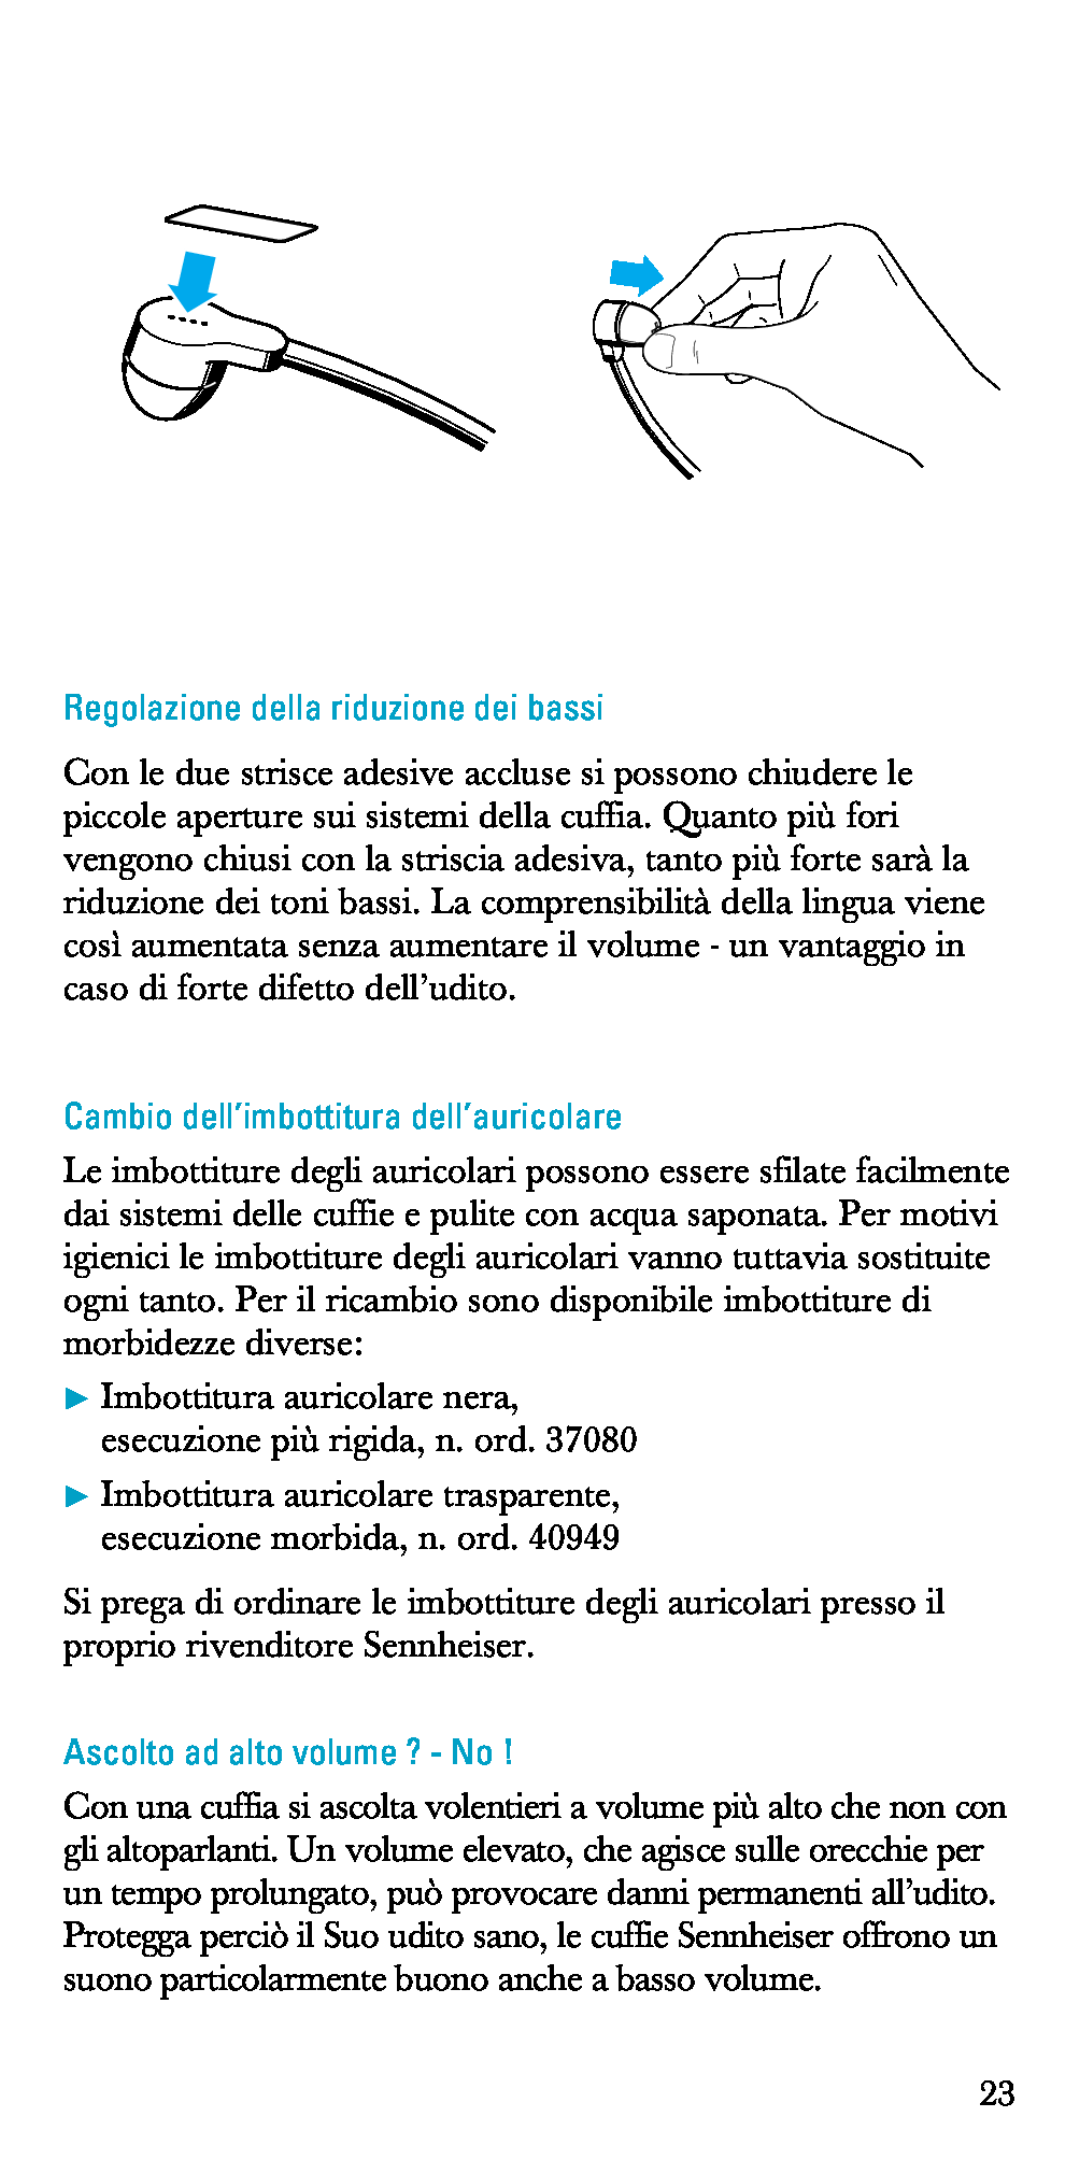 Sennheiser A200 manual Regolazione della riduzione dei bassi, Cambio dell’imbottitura dell’auricolare 